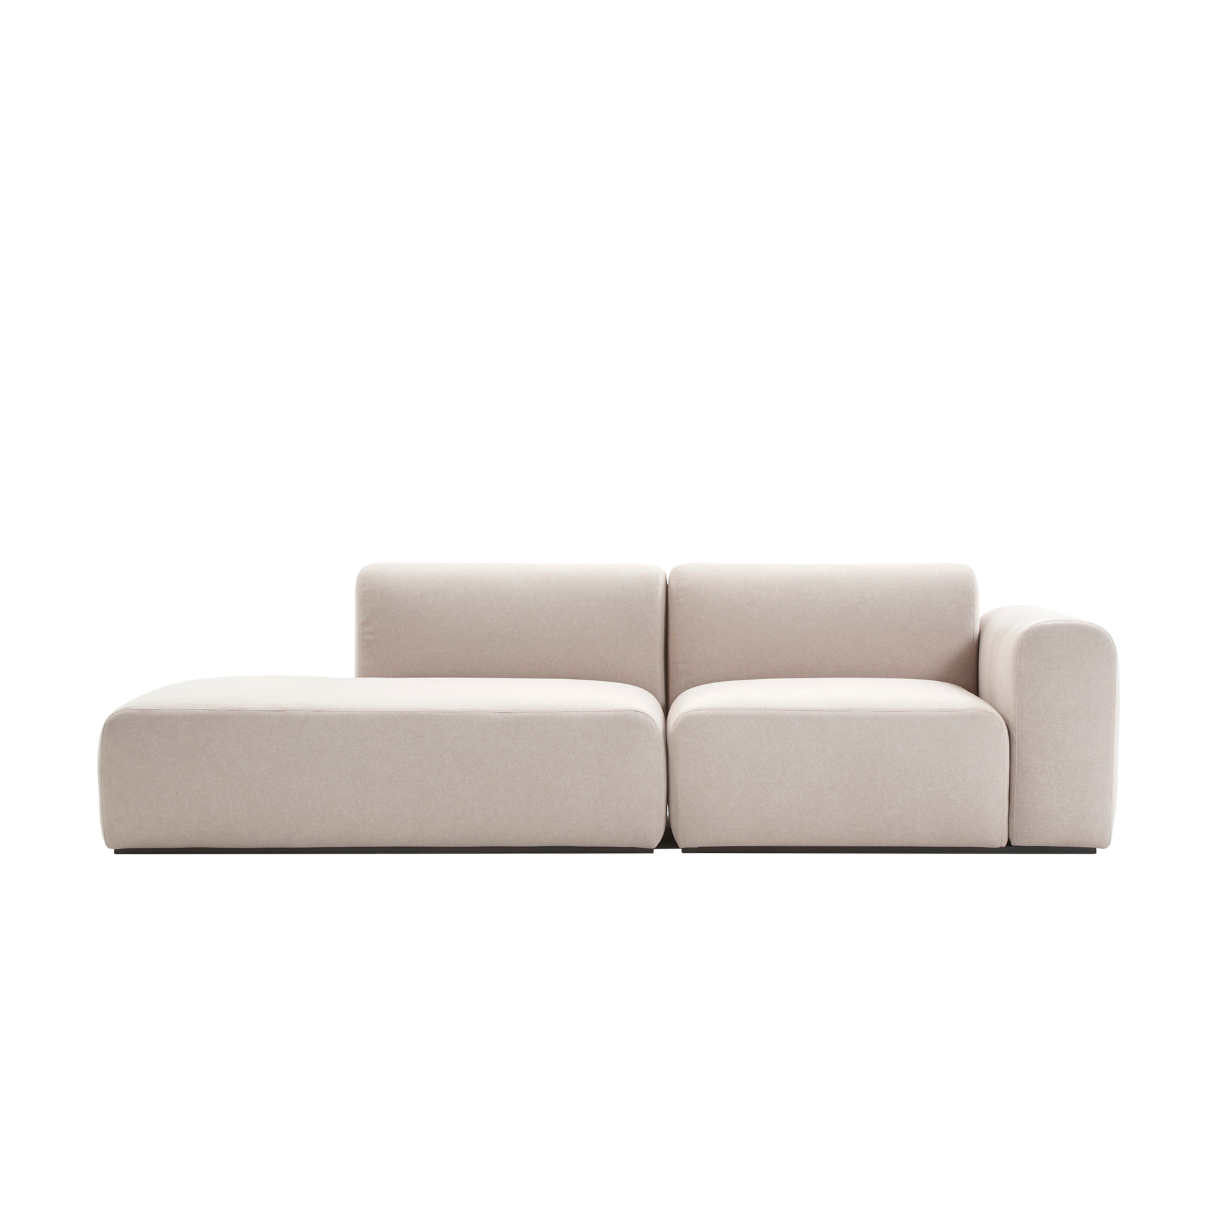 (주)도이치 DOICH ® Aquaclean PEN3 modular couch sofa  도이치 Pen3  3인 카우치 소파 ( 카우치+1.5인 ) /(스페인 아쿠아클린)  [3주 주문제작]